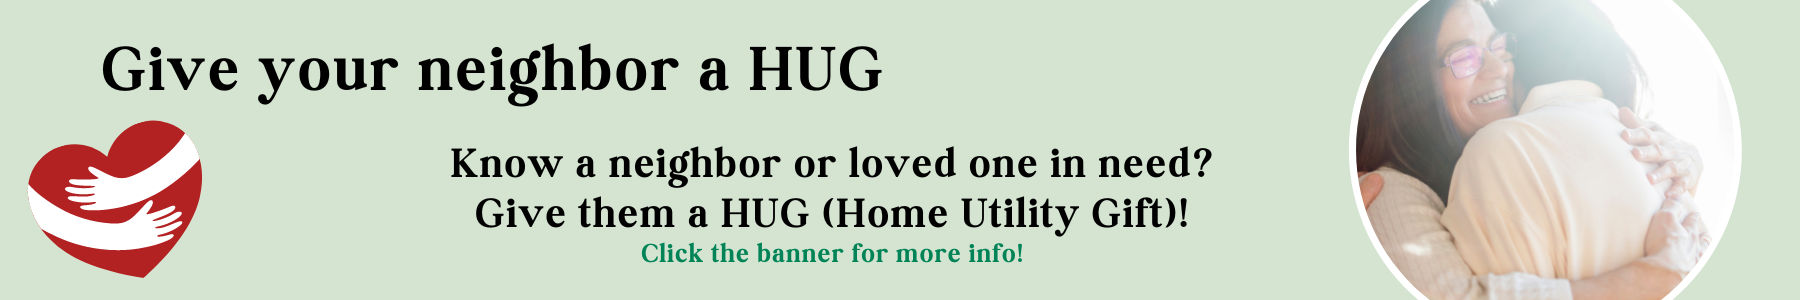 Home Utility Gift Program banner